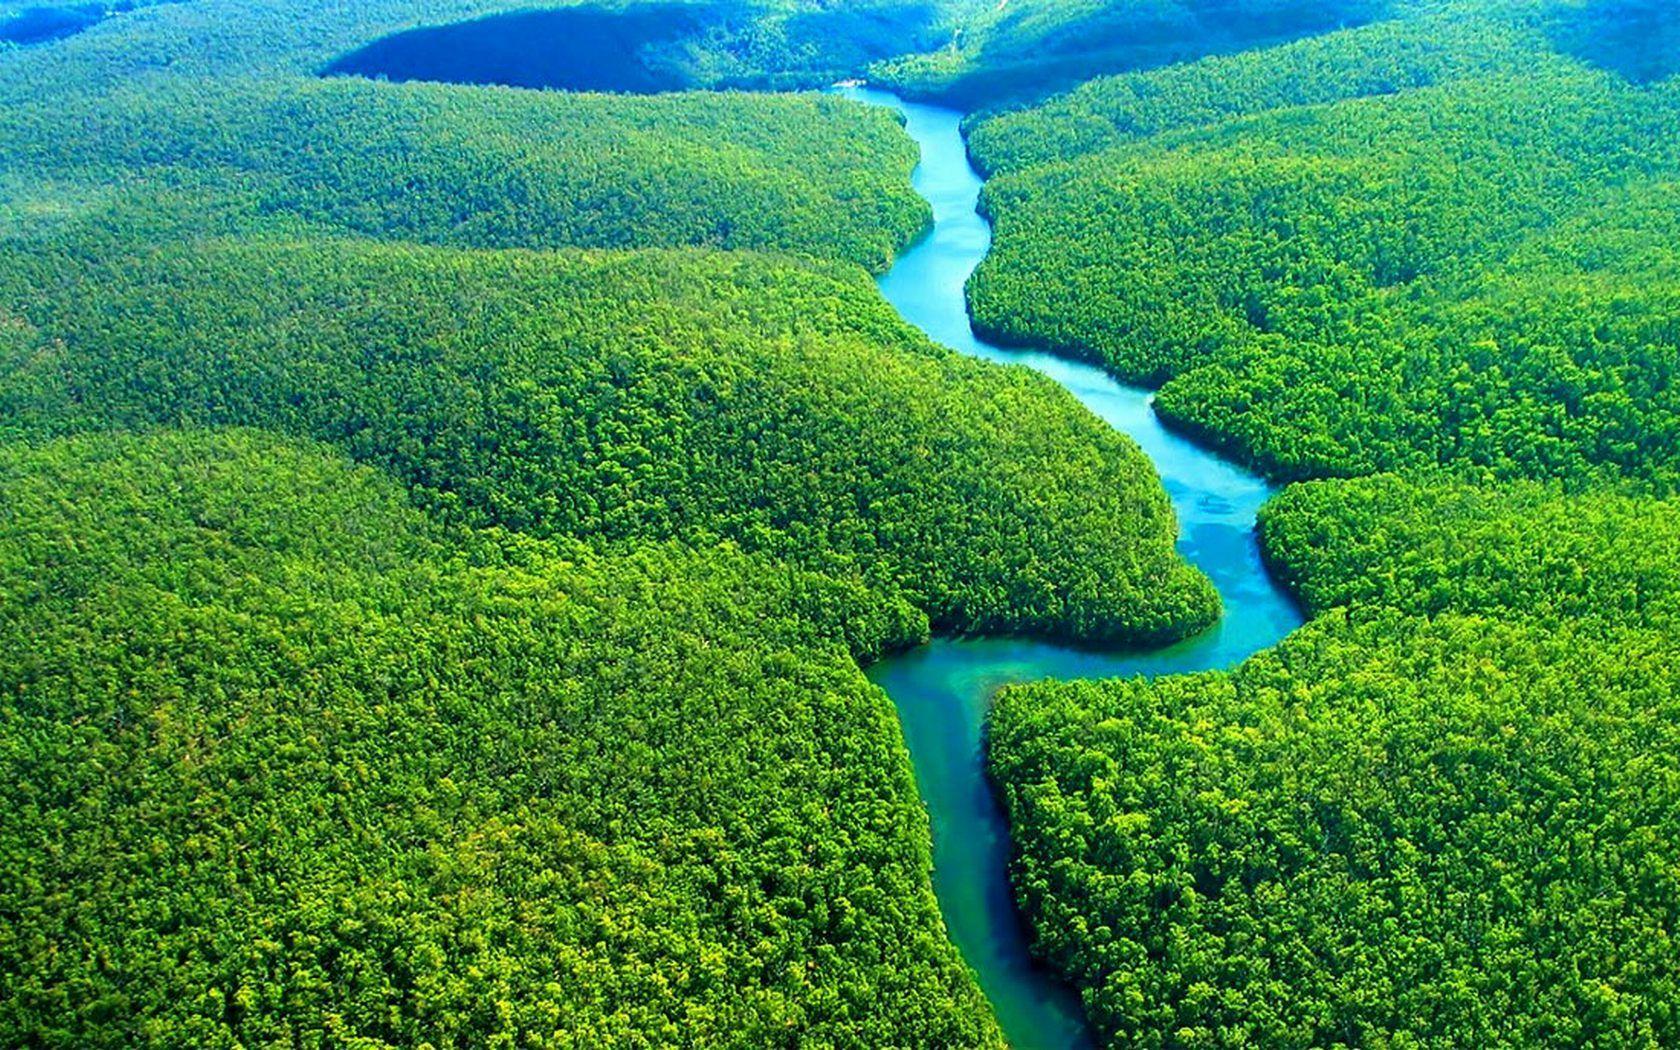 Amazon Rainforest Wallpaper Wide #uyg. Earth in 2019